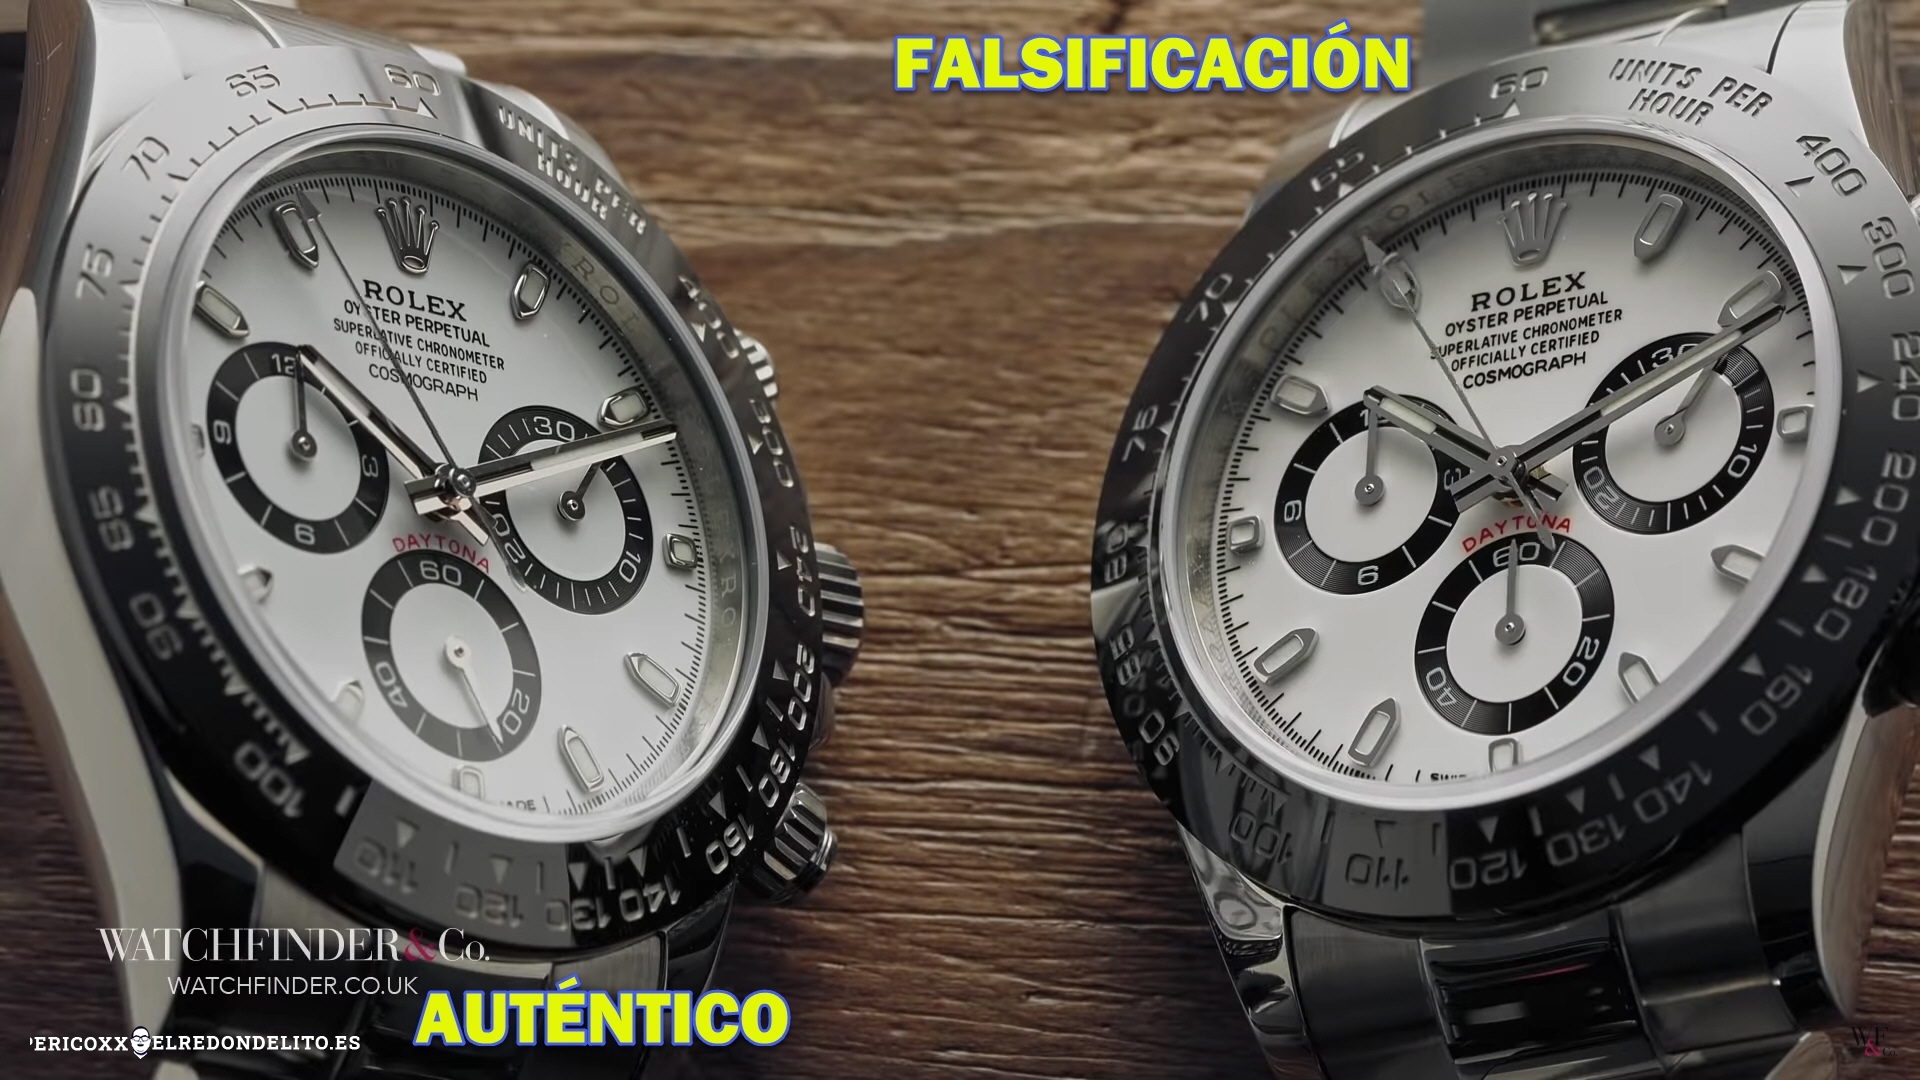 rolex_autentico_vs_falsificacion_elredondelito.es_011